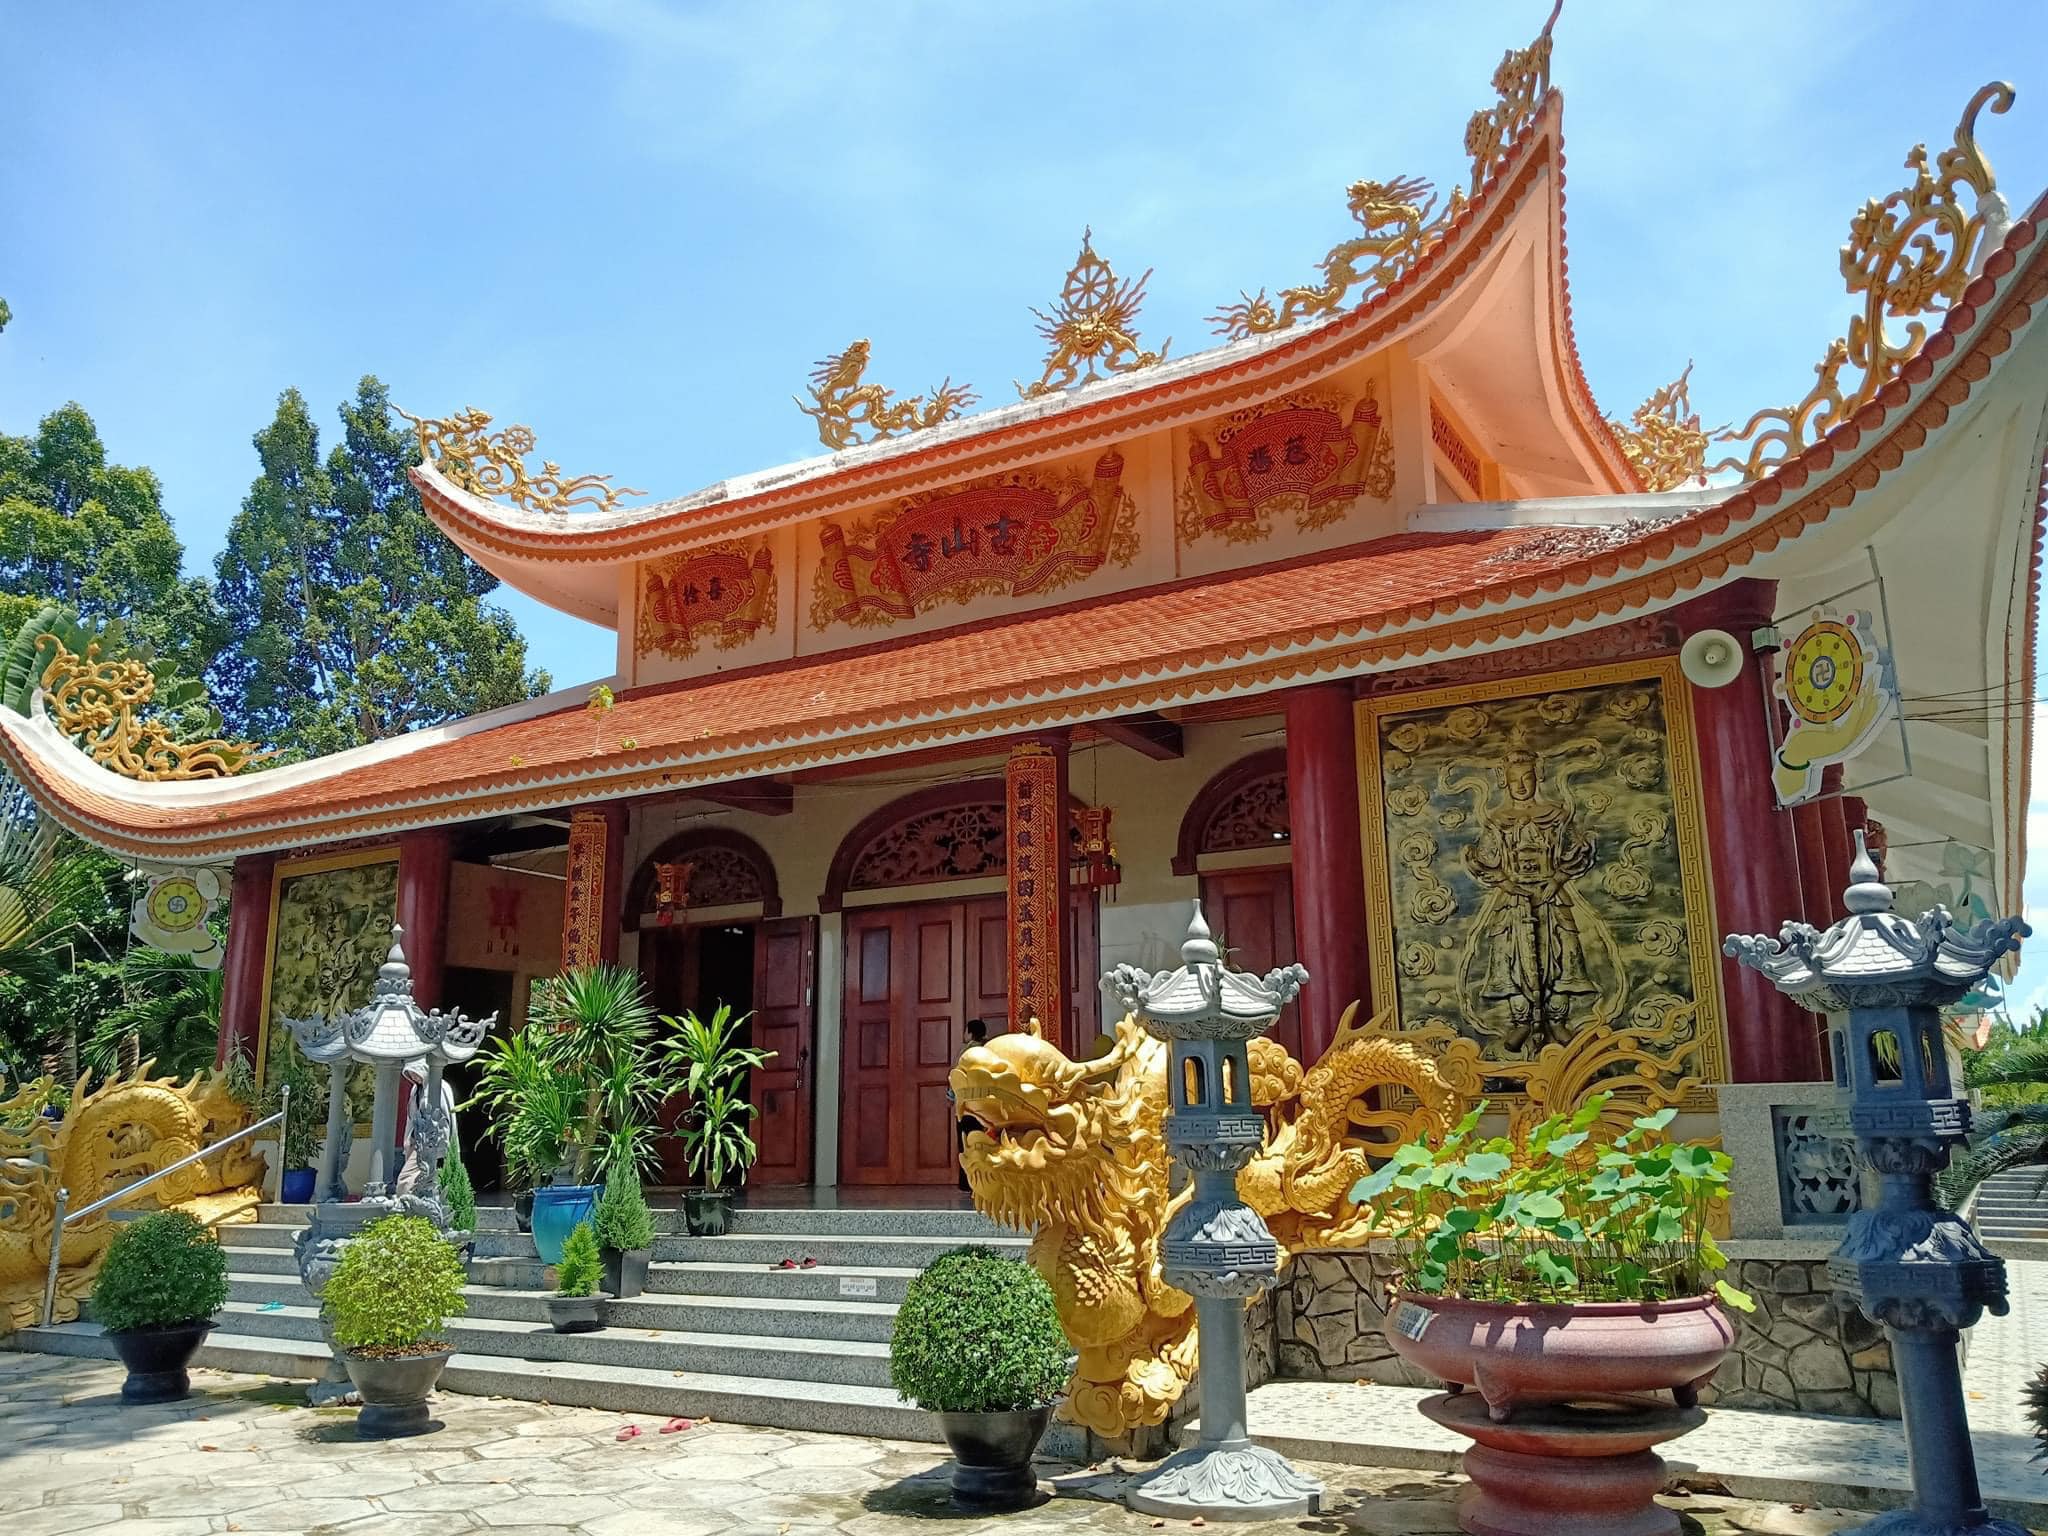 ngôi chùa uy nghi và linh thiêng bậc nhất Tuy Hòa, tỉnh Phú Yên, chùa Hồ Sơn Cổ Tự